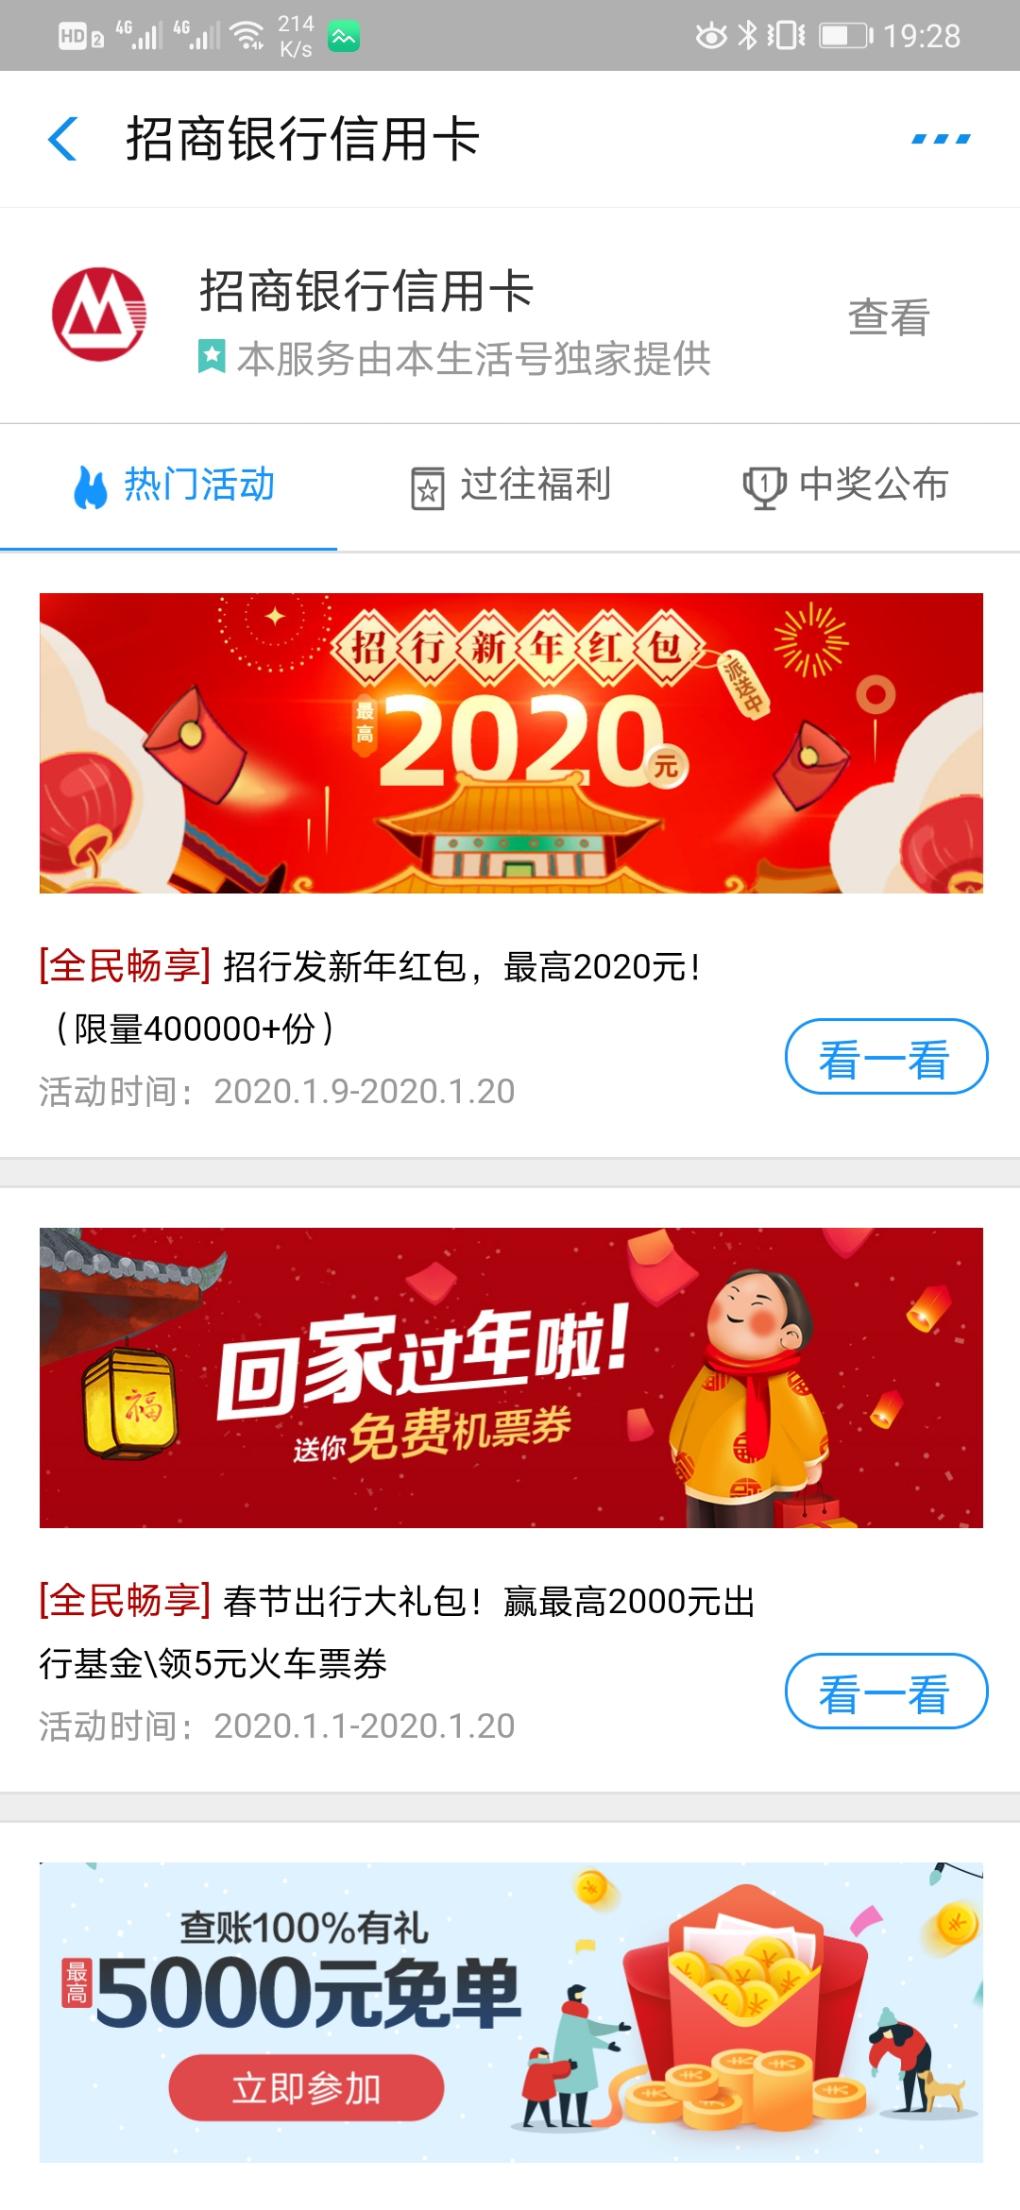 支付宝招行信用卡2020红包-惠小助(52huixz.com)